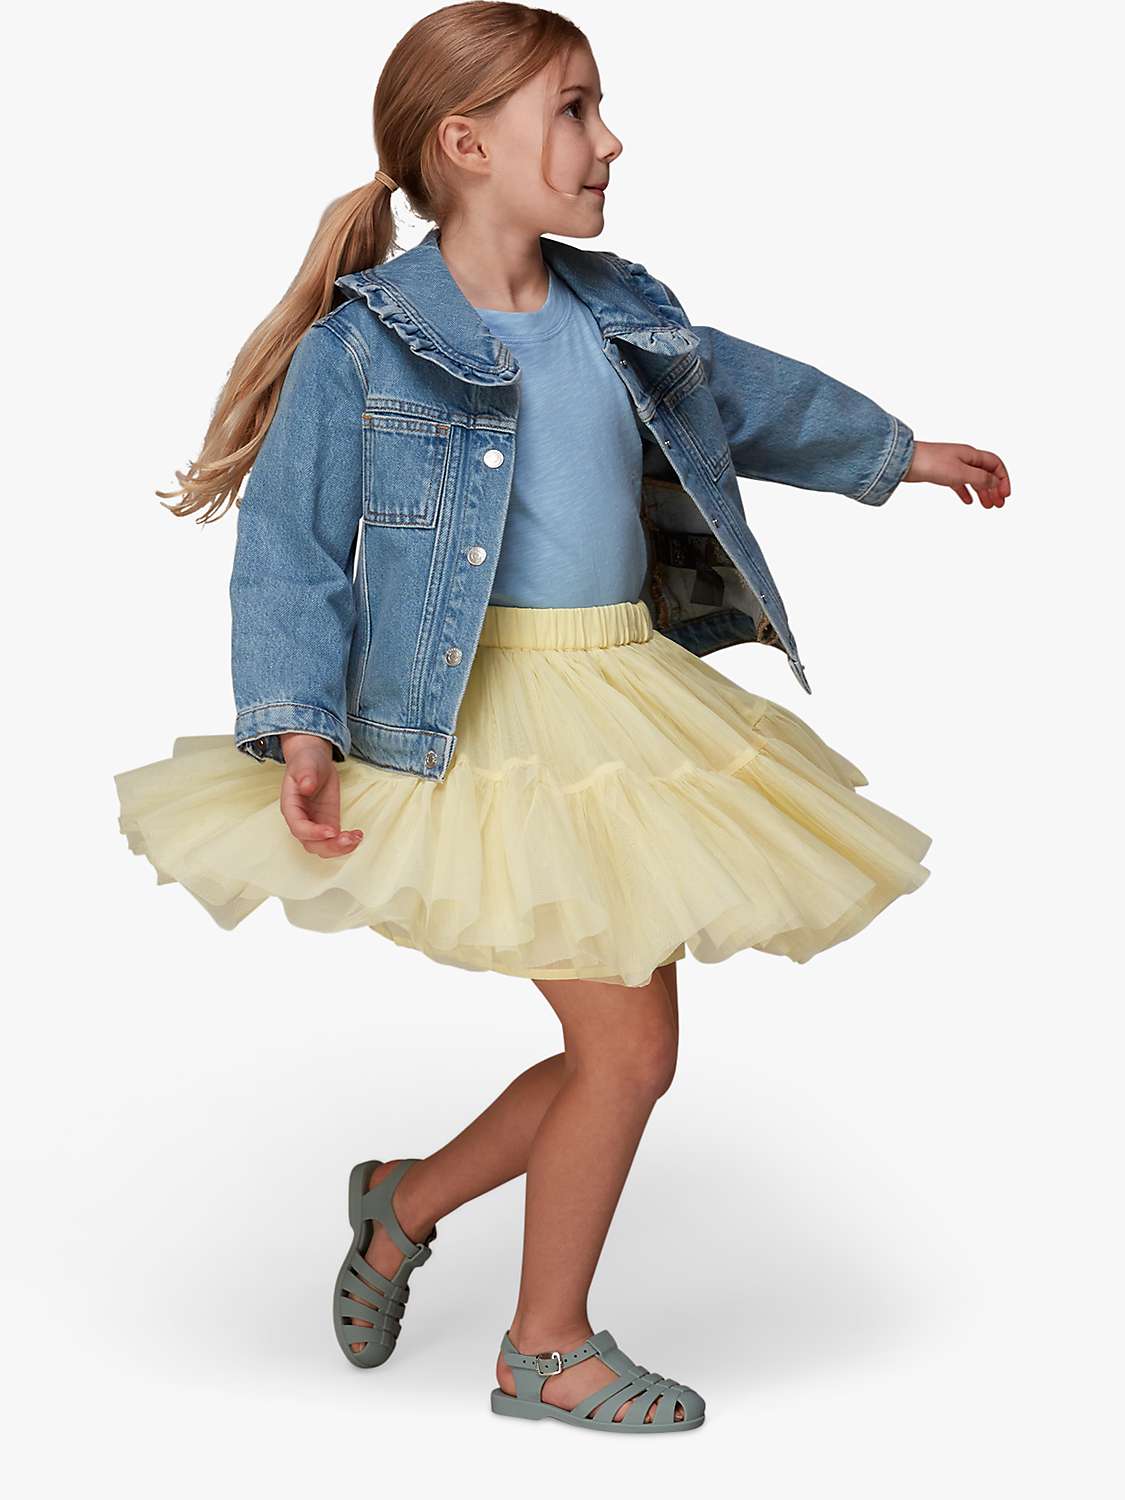 Buy Whistles Kids' Izzy Tulle Mini Skirt Online at johnlewis.com